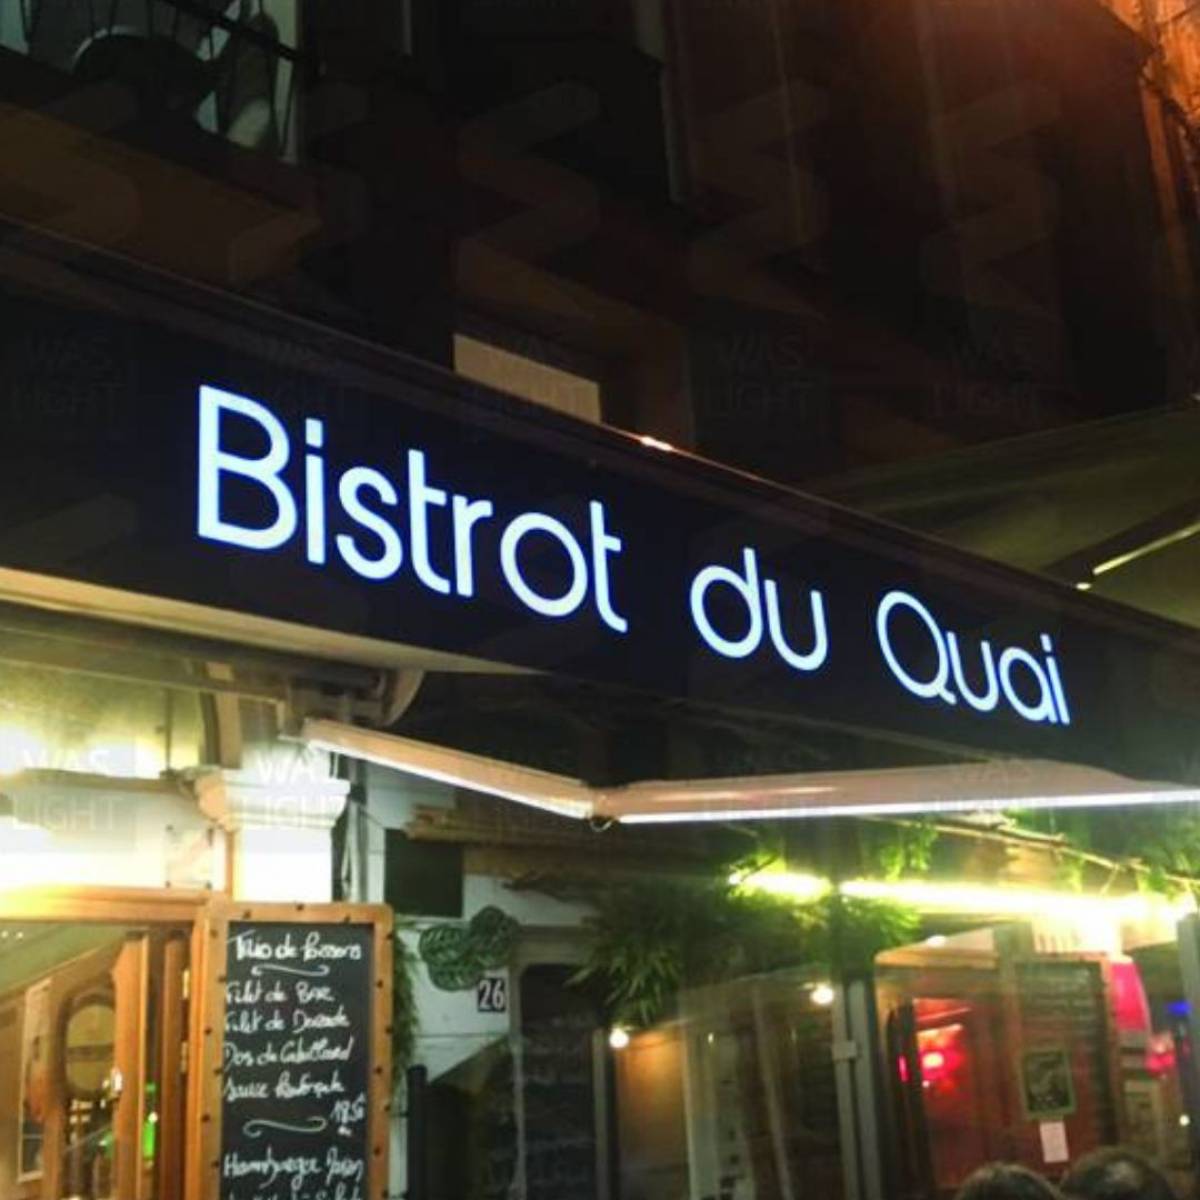 Création et production d'un lambrequin lumineux pour le restaurant Le Bistrot du Quai à La Rochelle commune située dans le département de la Charente-Maritime